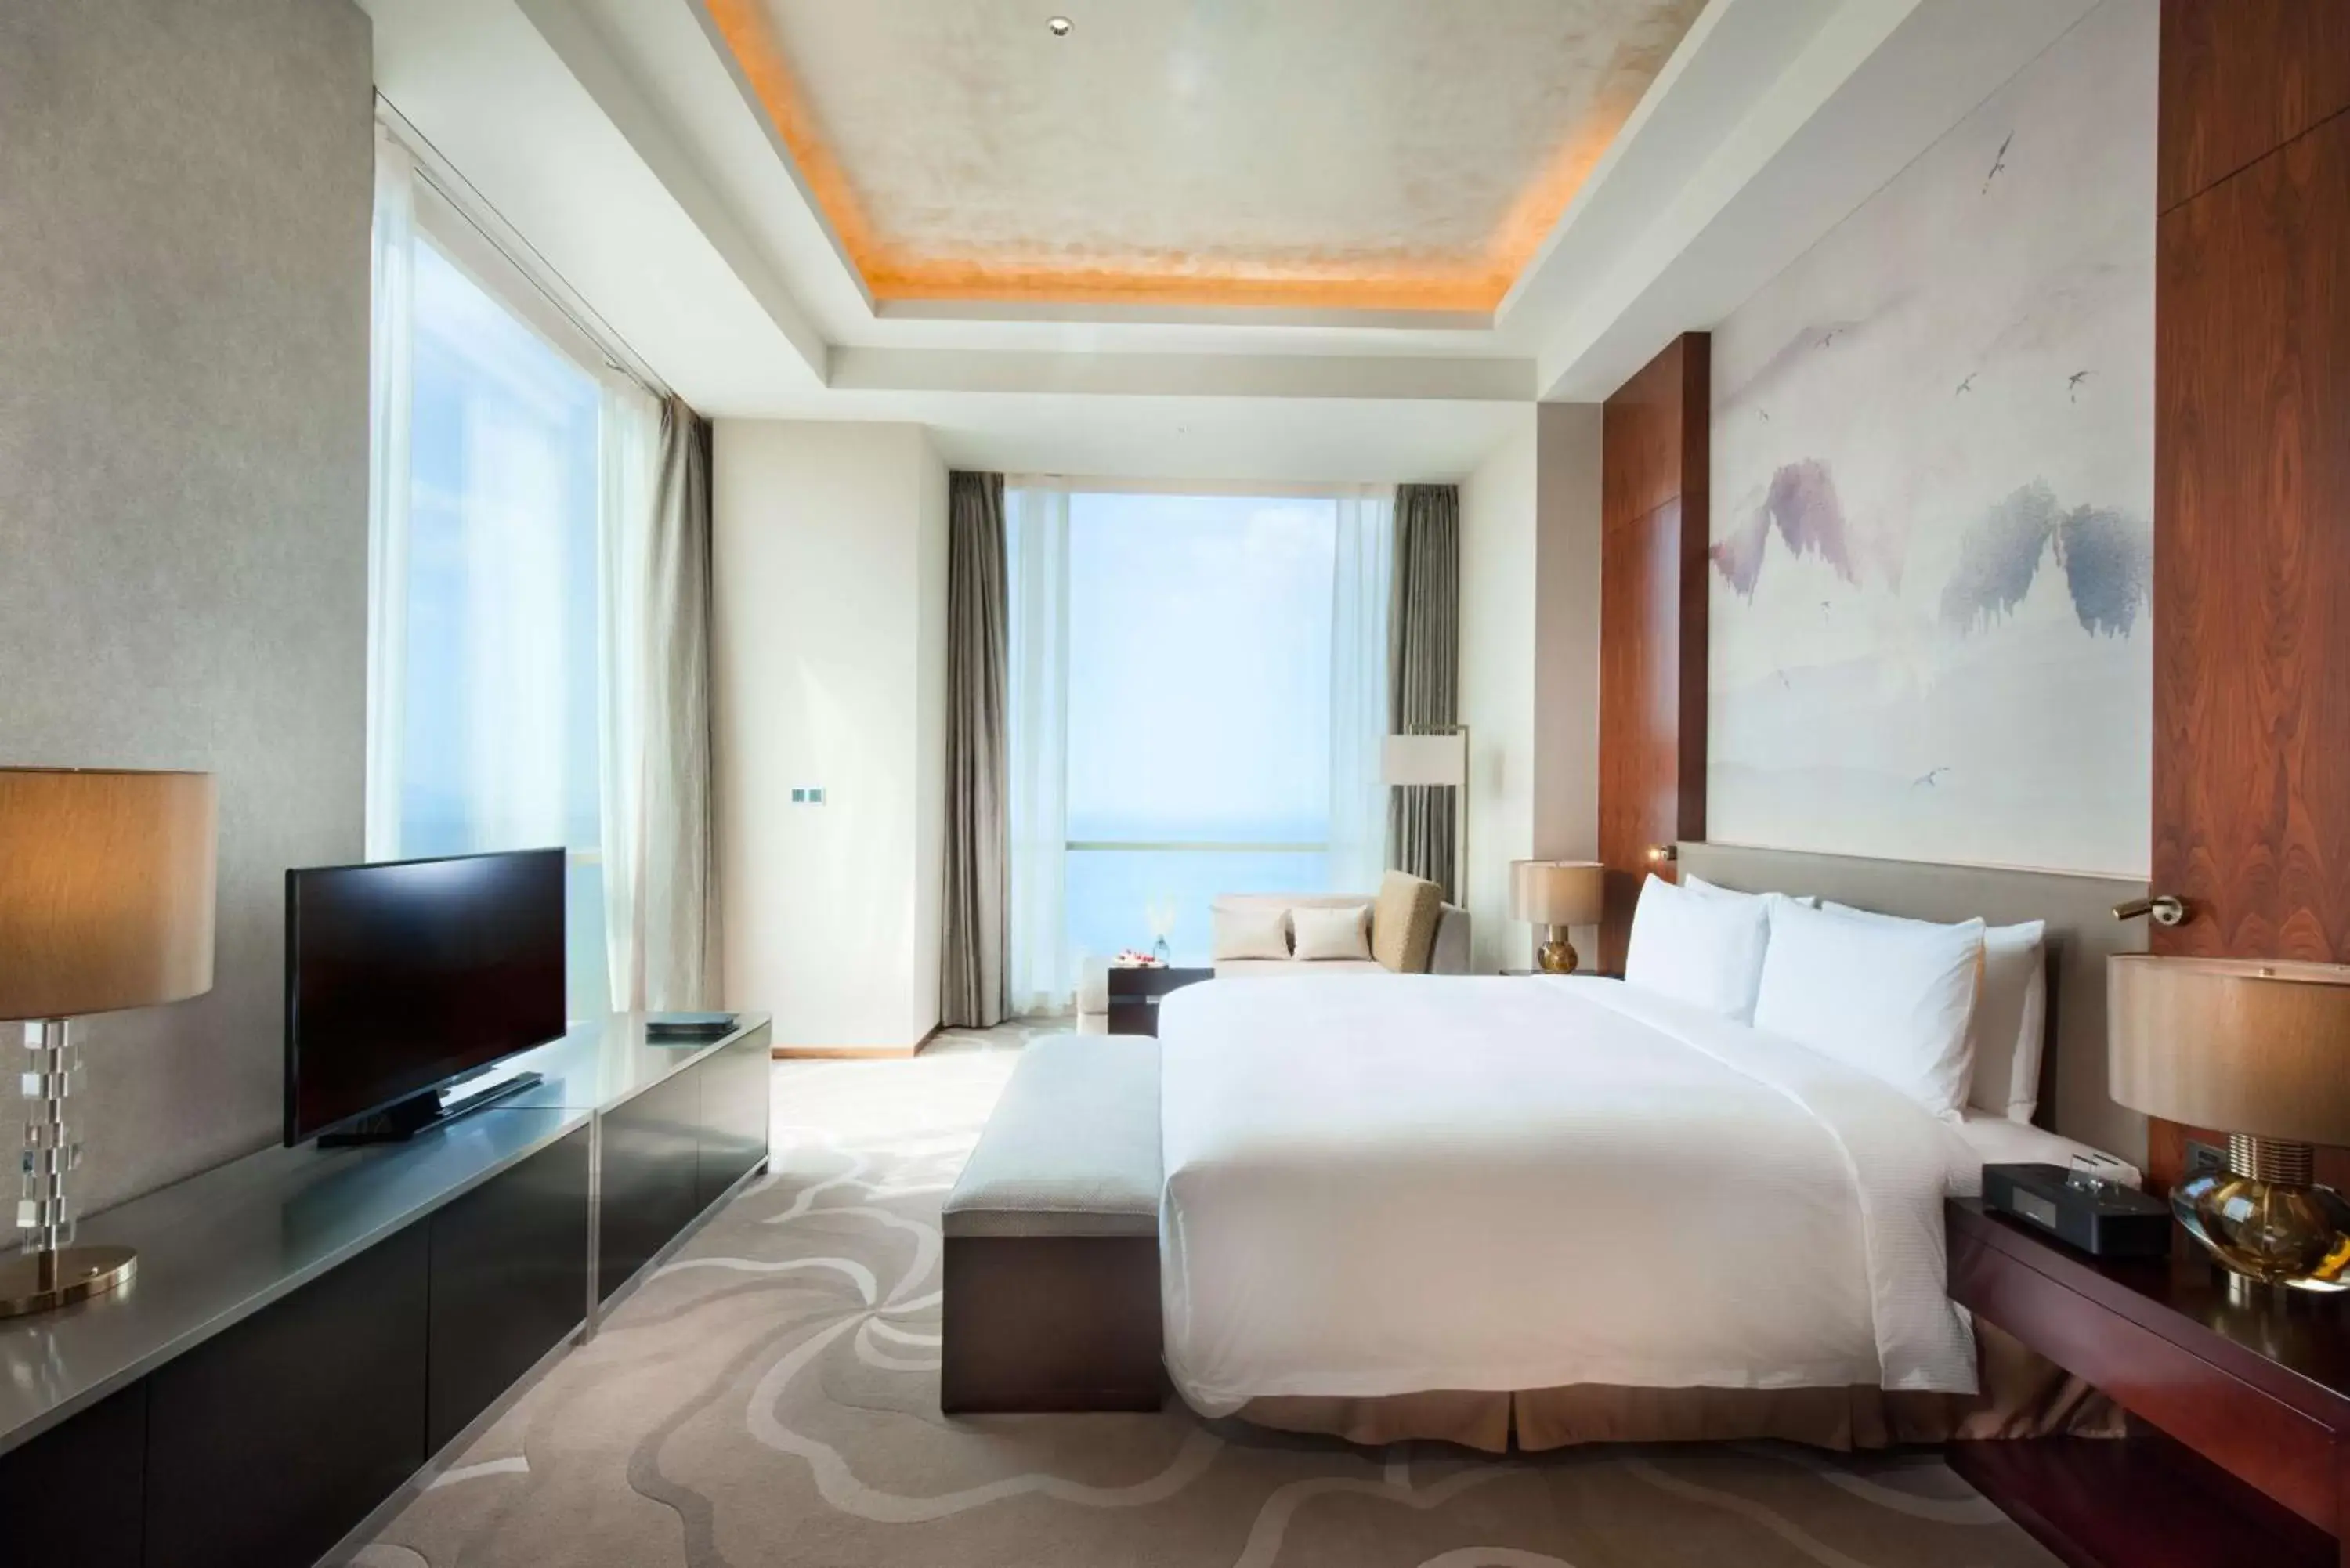 Photo of the whole room in Hilton Yantai Golden Coast